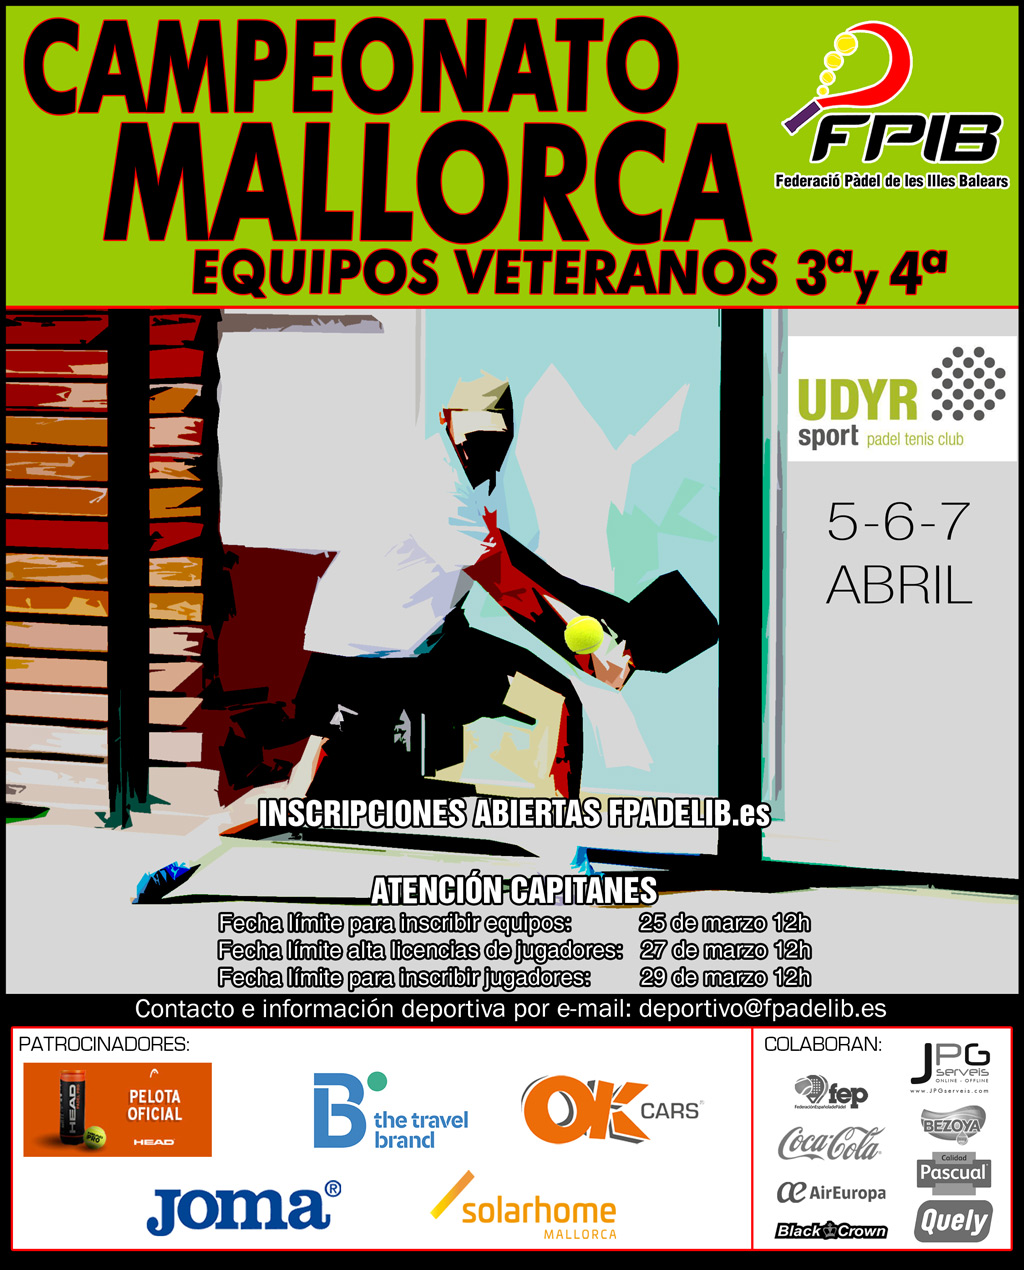 2019 Camp Mallorca Equipos Veteranos3y4